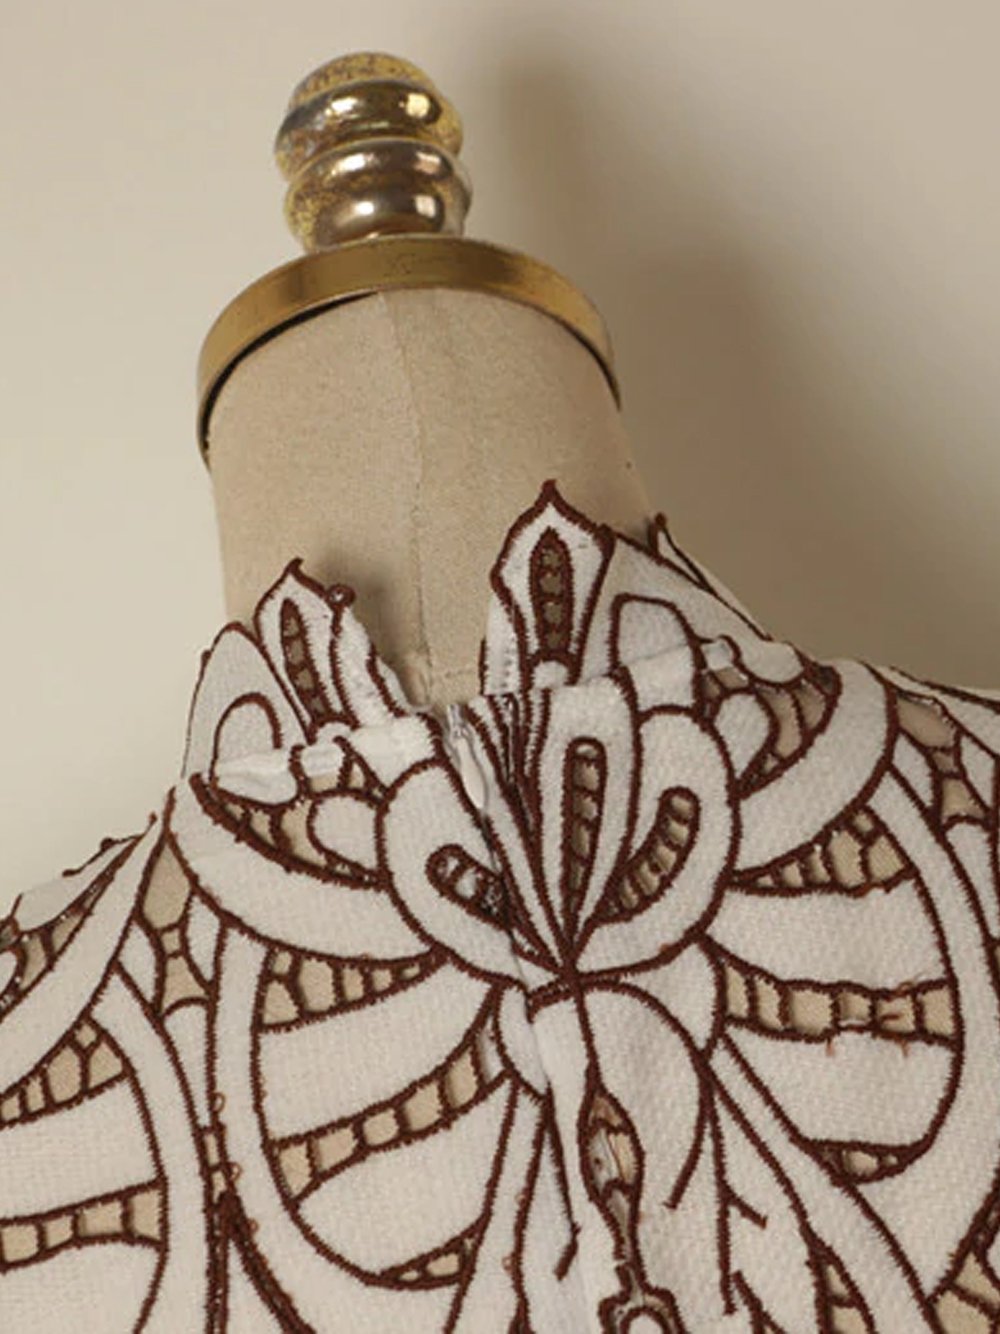 FIORI Embroidery Mini Dress